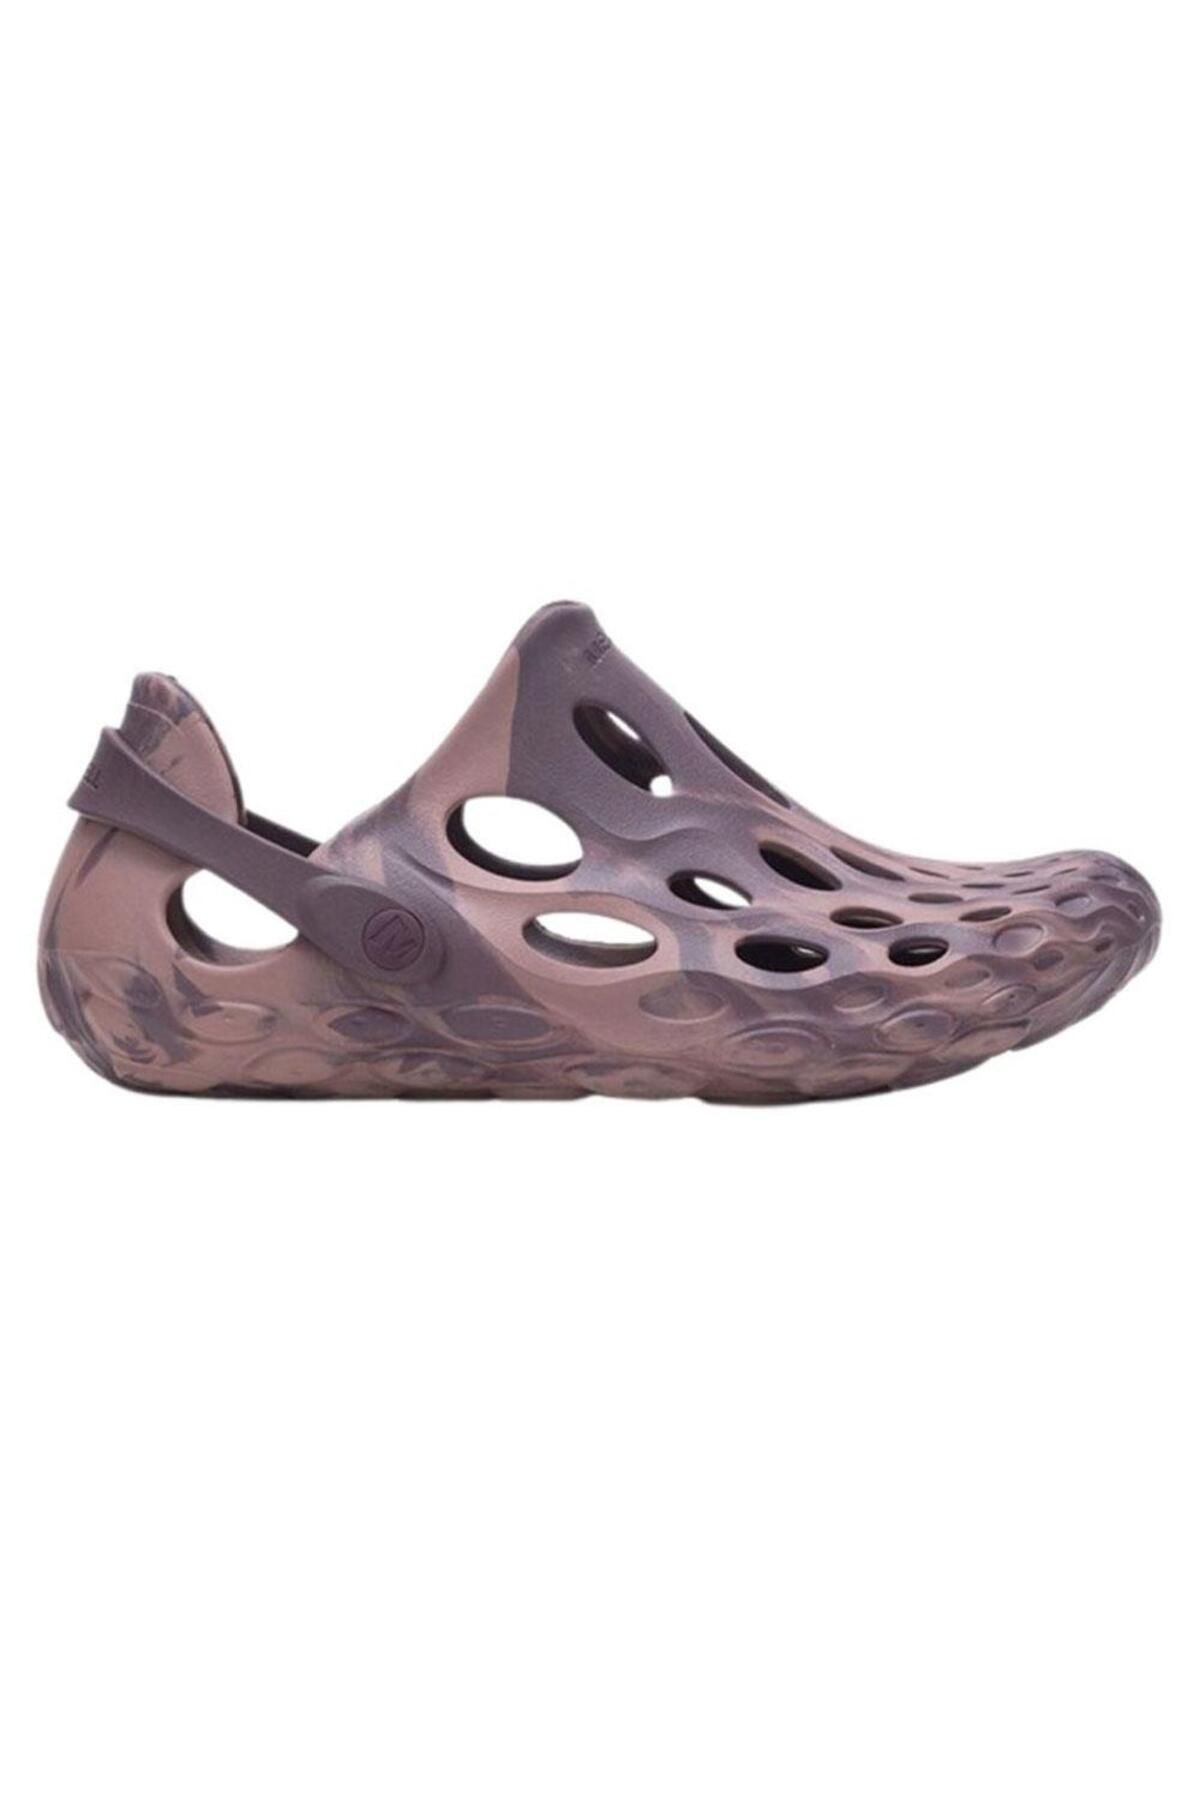 Merrell Hydro Moc Erkek Sandalet J004254